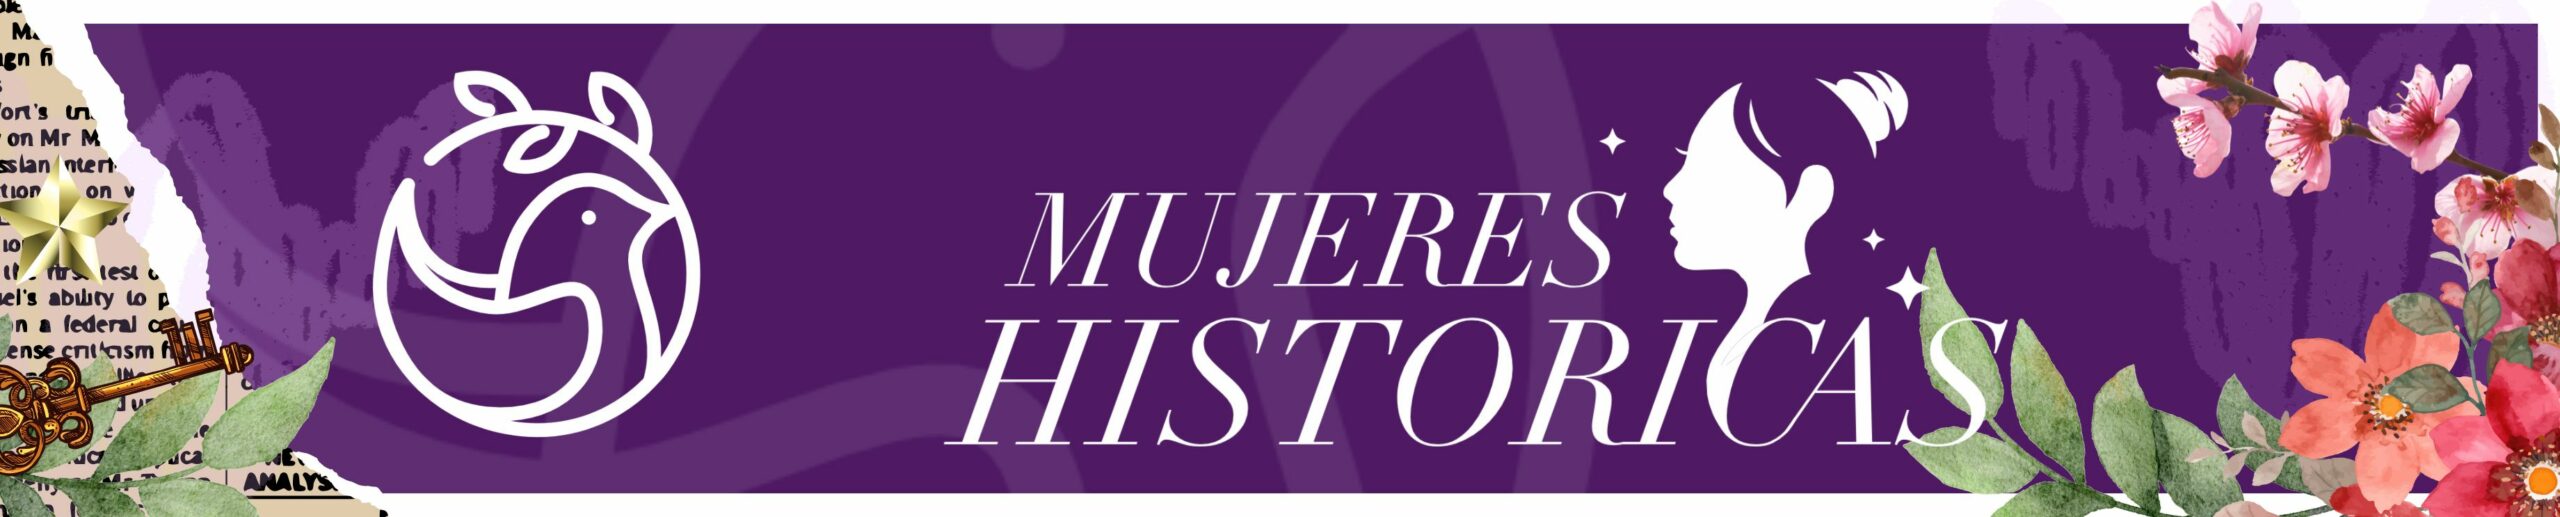 Banner de Mujeres Históricas